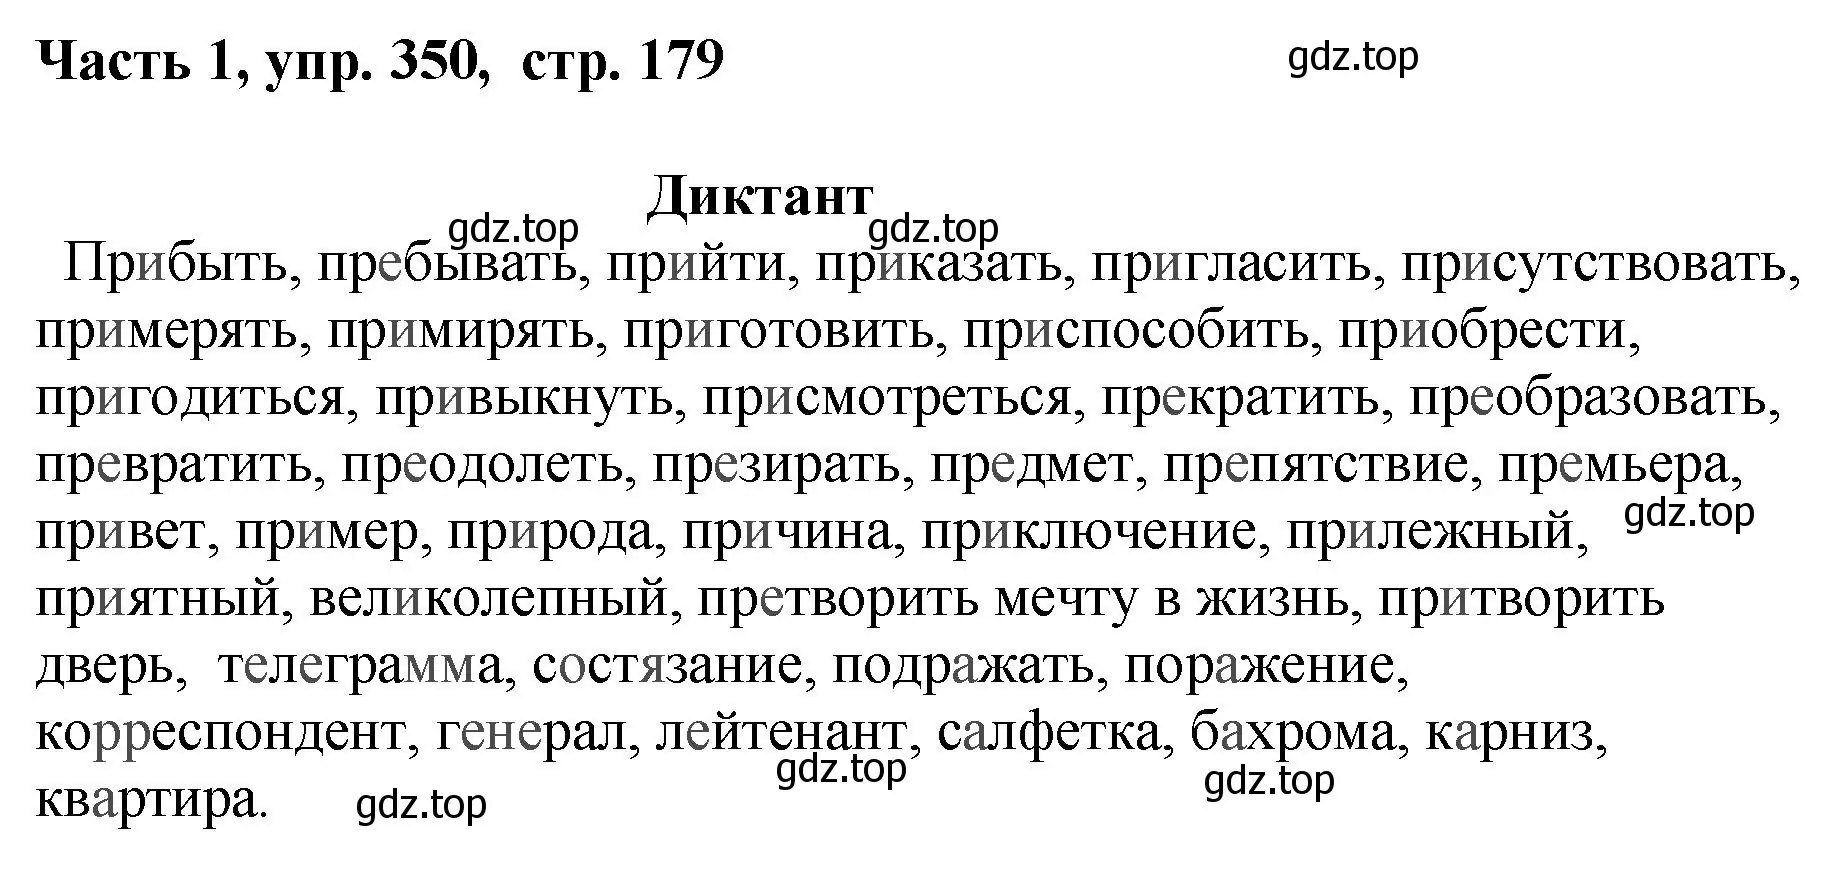 Решение номер 350 (страница 179) гдз по русскому языку 6 класс Баранов, Ладыженская, учебник 1 часть